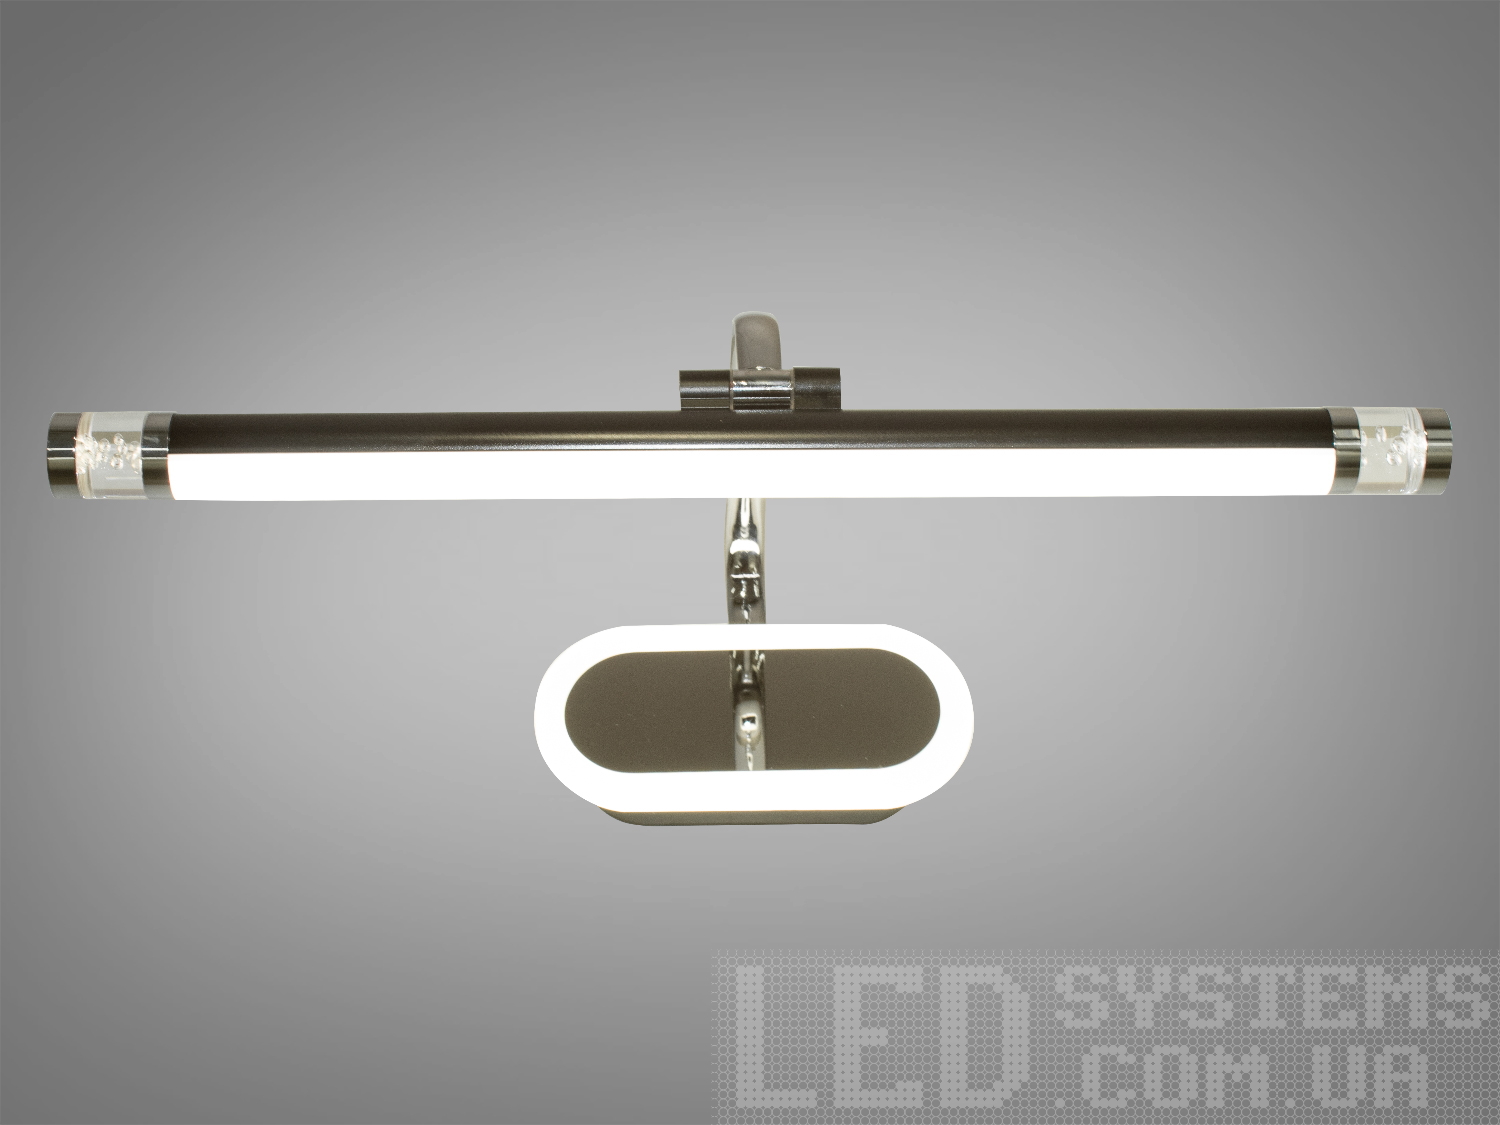 Ідеальне LED освітлення для дзеркал та картин призначене для акцентного (елементного) підсвічування в інтер'єрі - підсвічування дзеркал як у приміщенні, так і у ванній кімнаті, для картин, витворів мистецтва, стінних ніш.У цій серії всі світильники оснащені світлодіодними енергозберігаючими лампами. Які за дуже низької споживаної потужності створюють потужний світловий потік.
Кріпиться до будь-яких поверхонь стін універсальним кріпленням на монтажну планку.